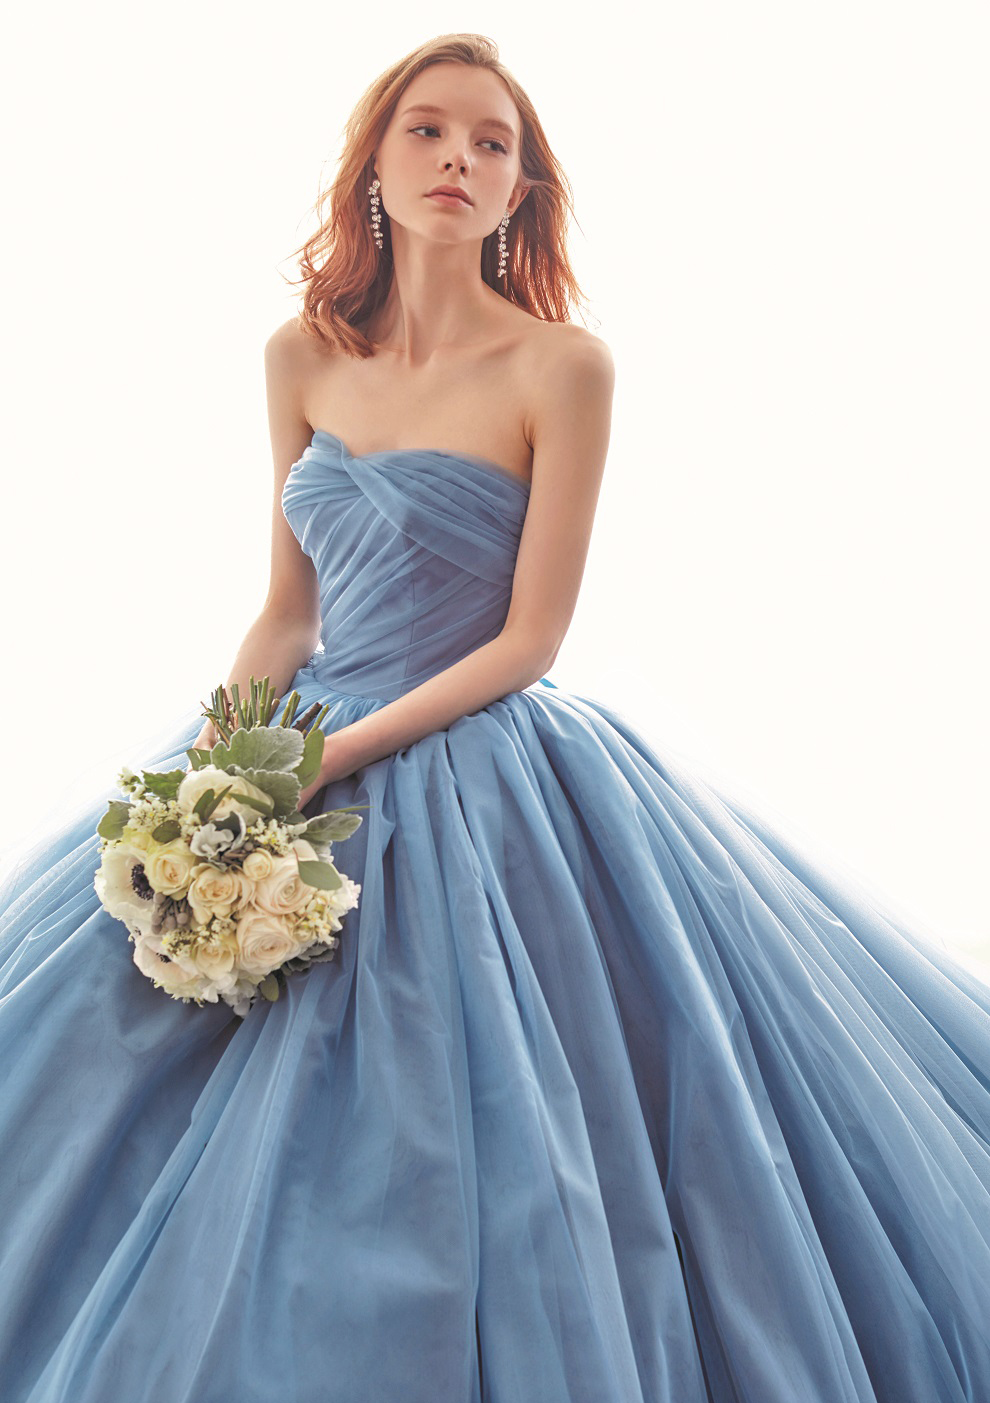 ウェディングドレス人気カラー〈幸せの象徴カラー 青・ブルー編〉 | ウェディングドレス検索サイト | MATSUOのドレスウェディング